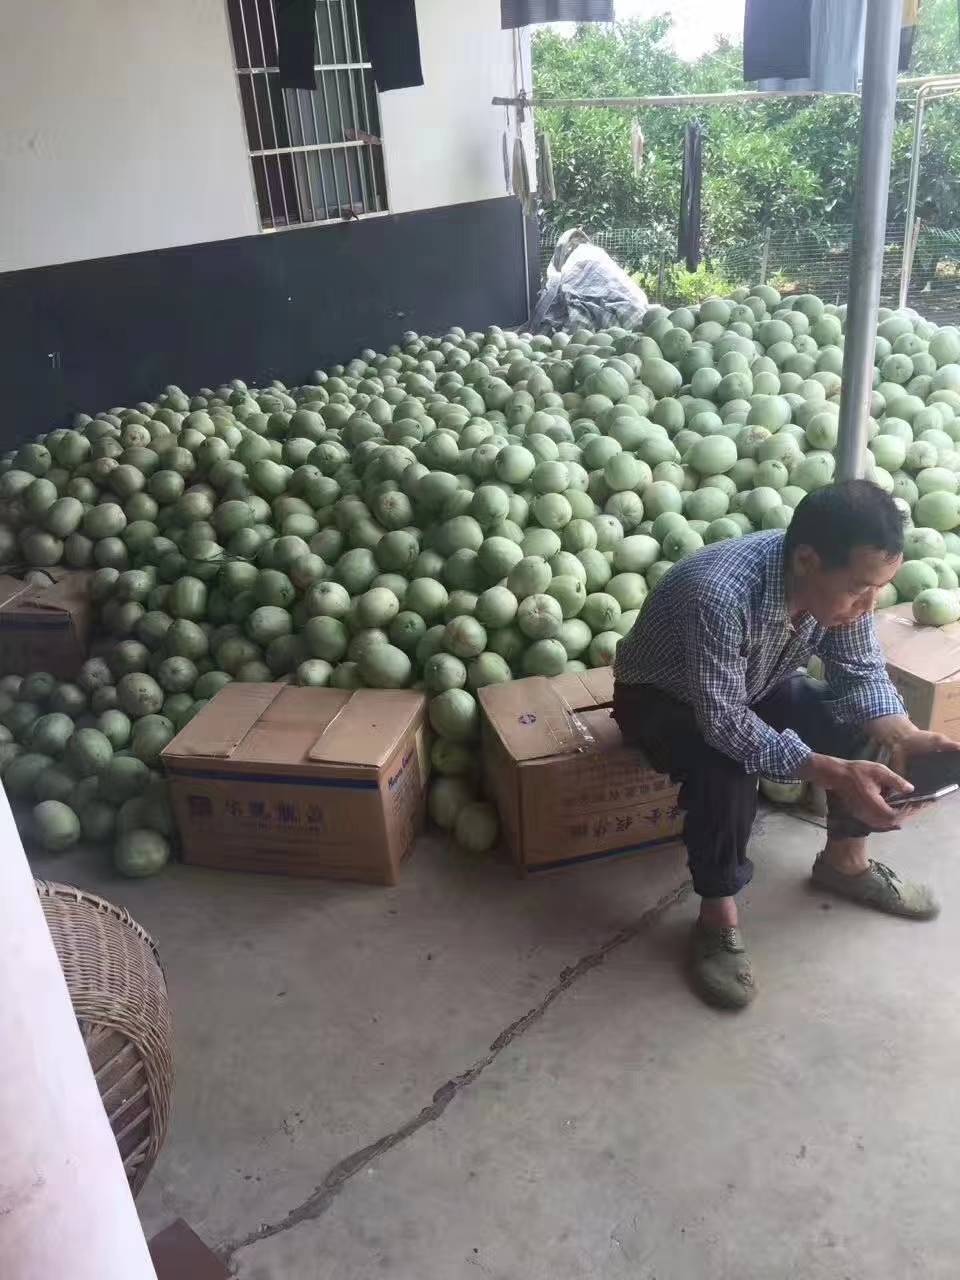 梨瓜.香瓜，个大口感好
糖度14/17
供货量大约一百万斤左右，提供一条龙服务